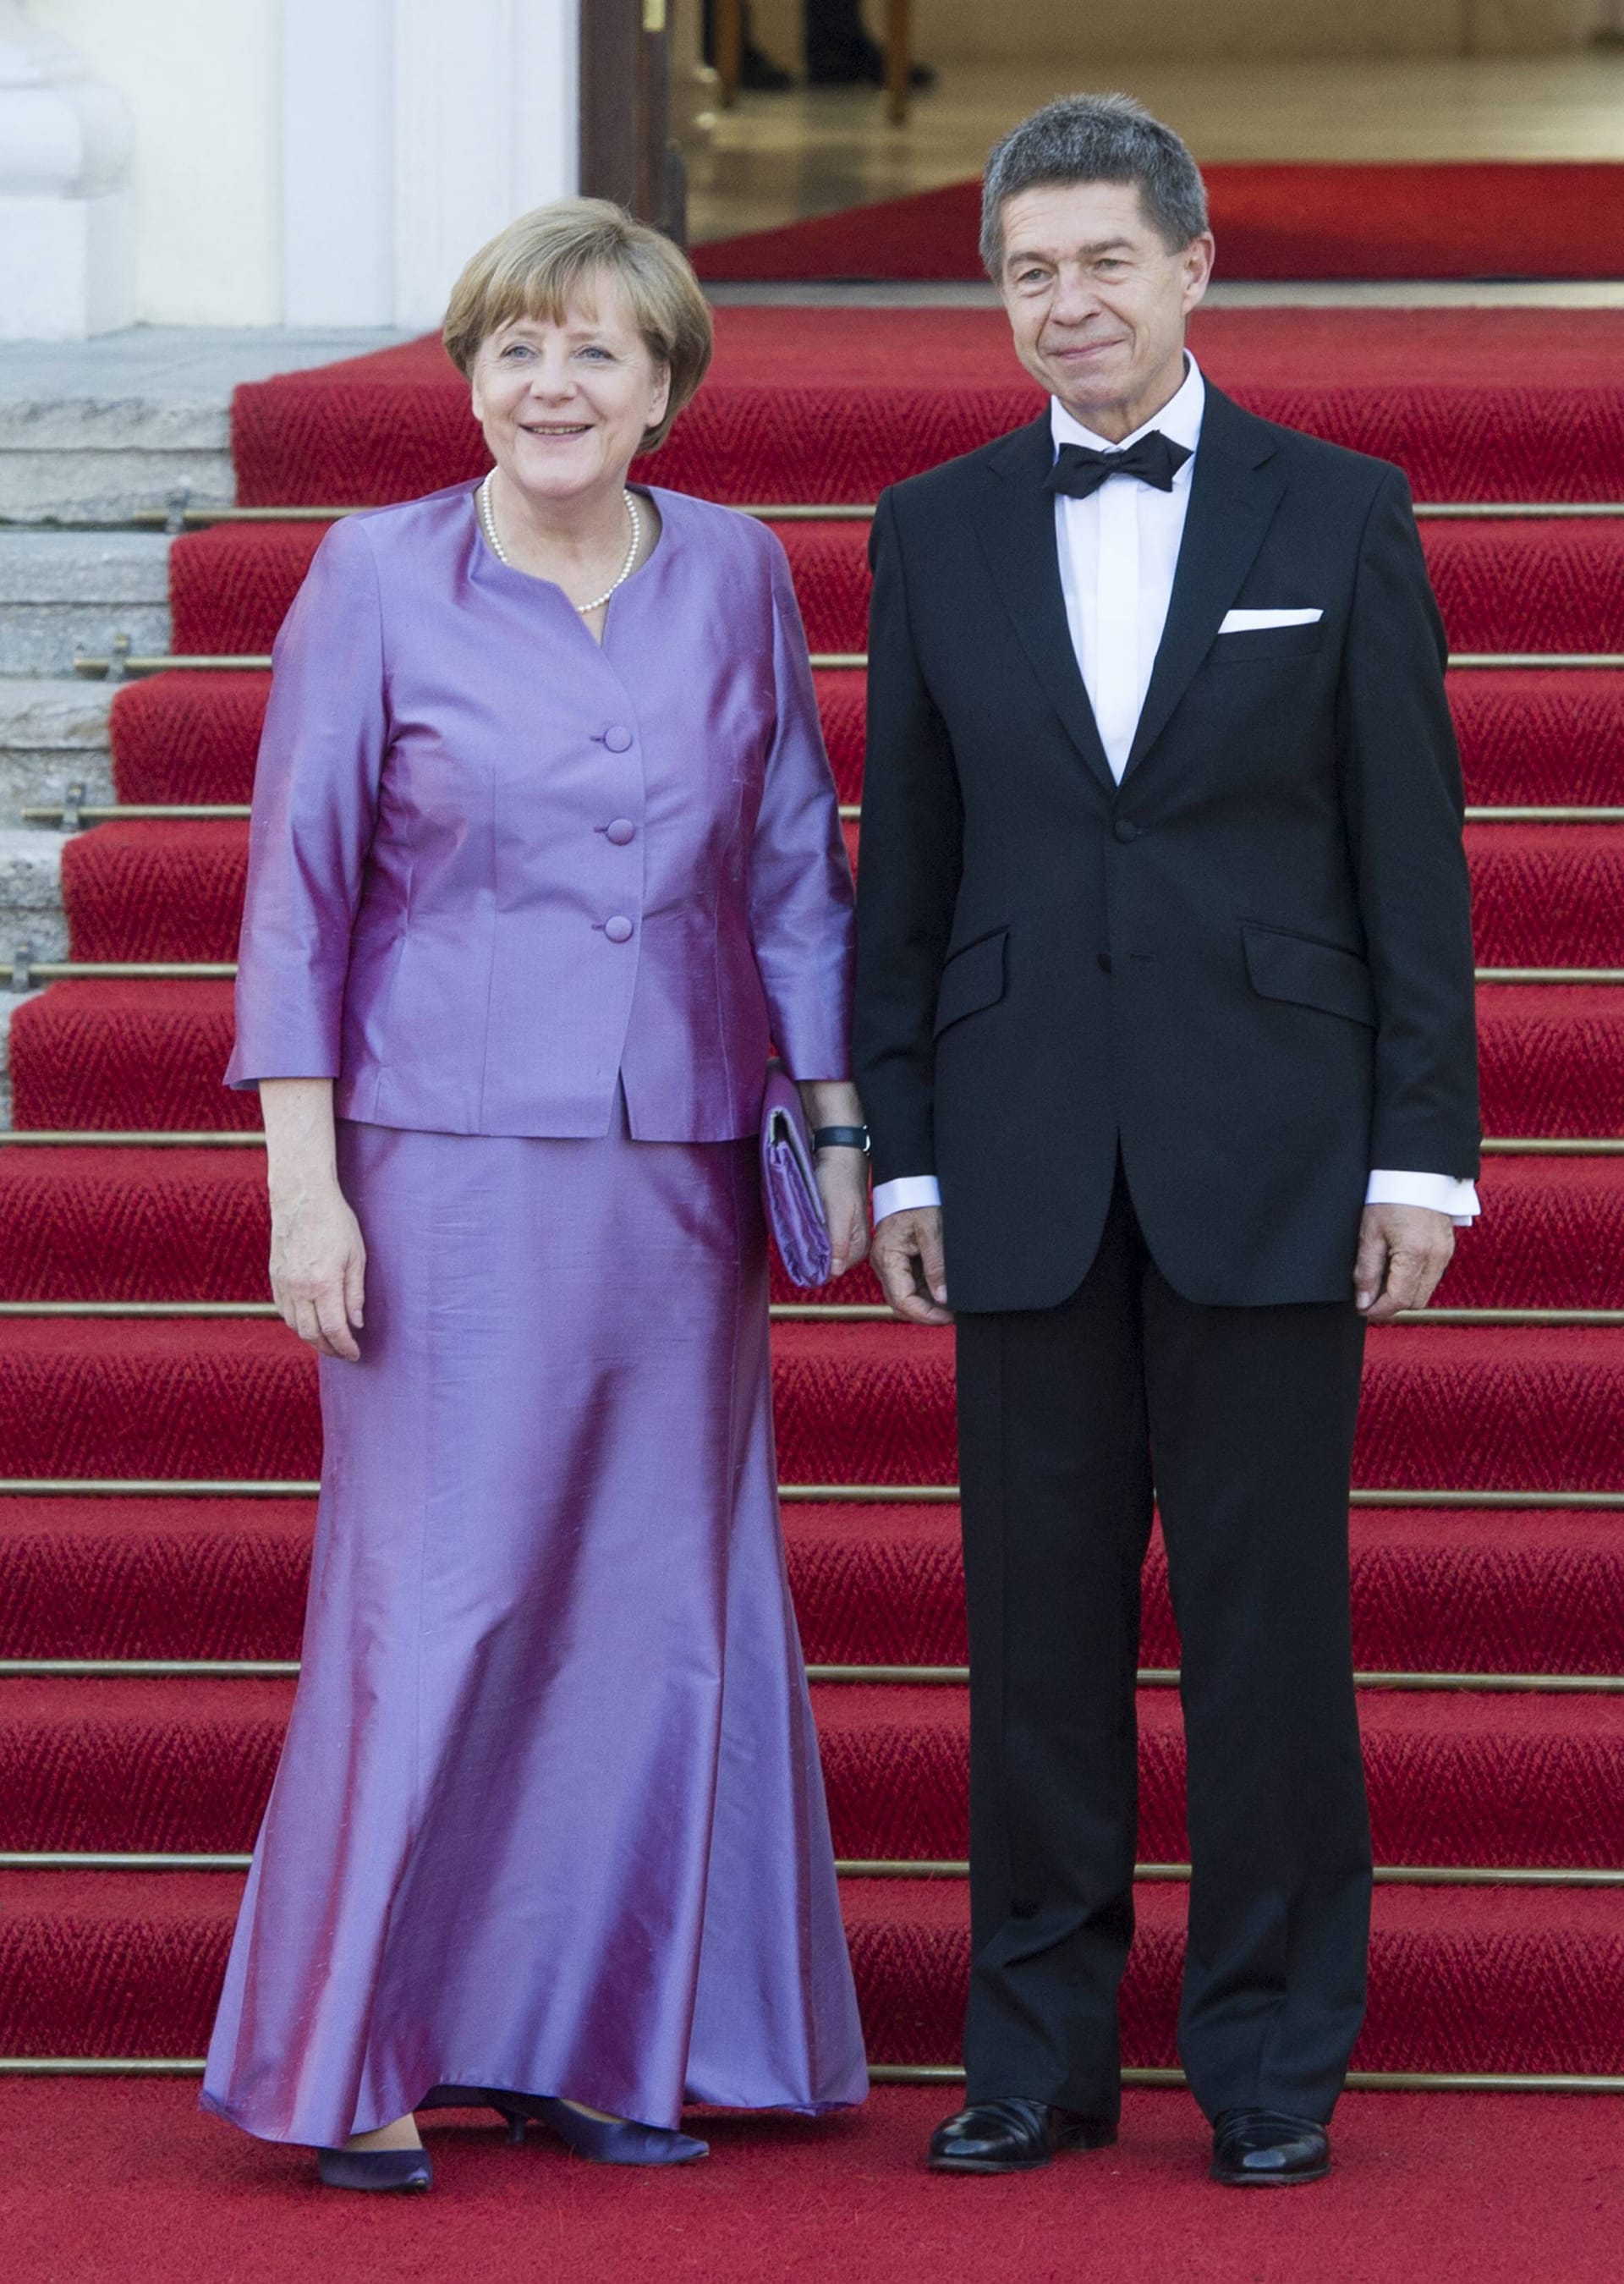 Als die Queen 2015 Deutschland besuchte, wählte die Merkel für ein Staatsbankett ebenfalls das fliederfarbene Ensemble.